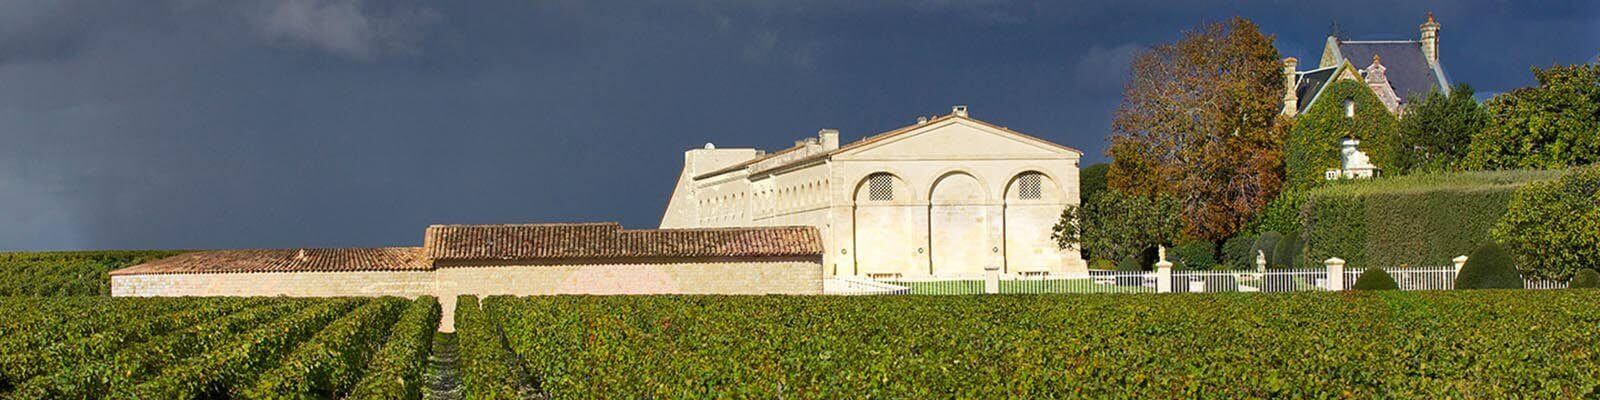 Unsere Kollektion von Château Mouton Rothschild - Finden Sie diese bei Onshore Cellars Ihrem Yacht-Weinlieferanten